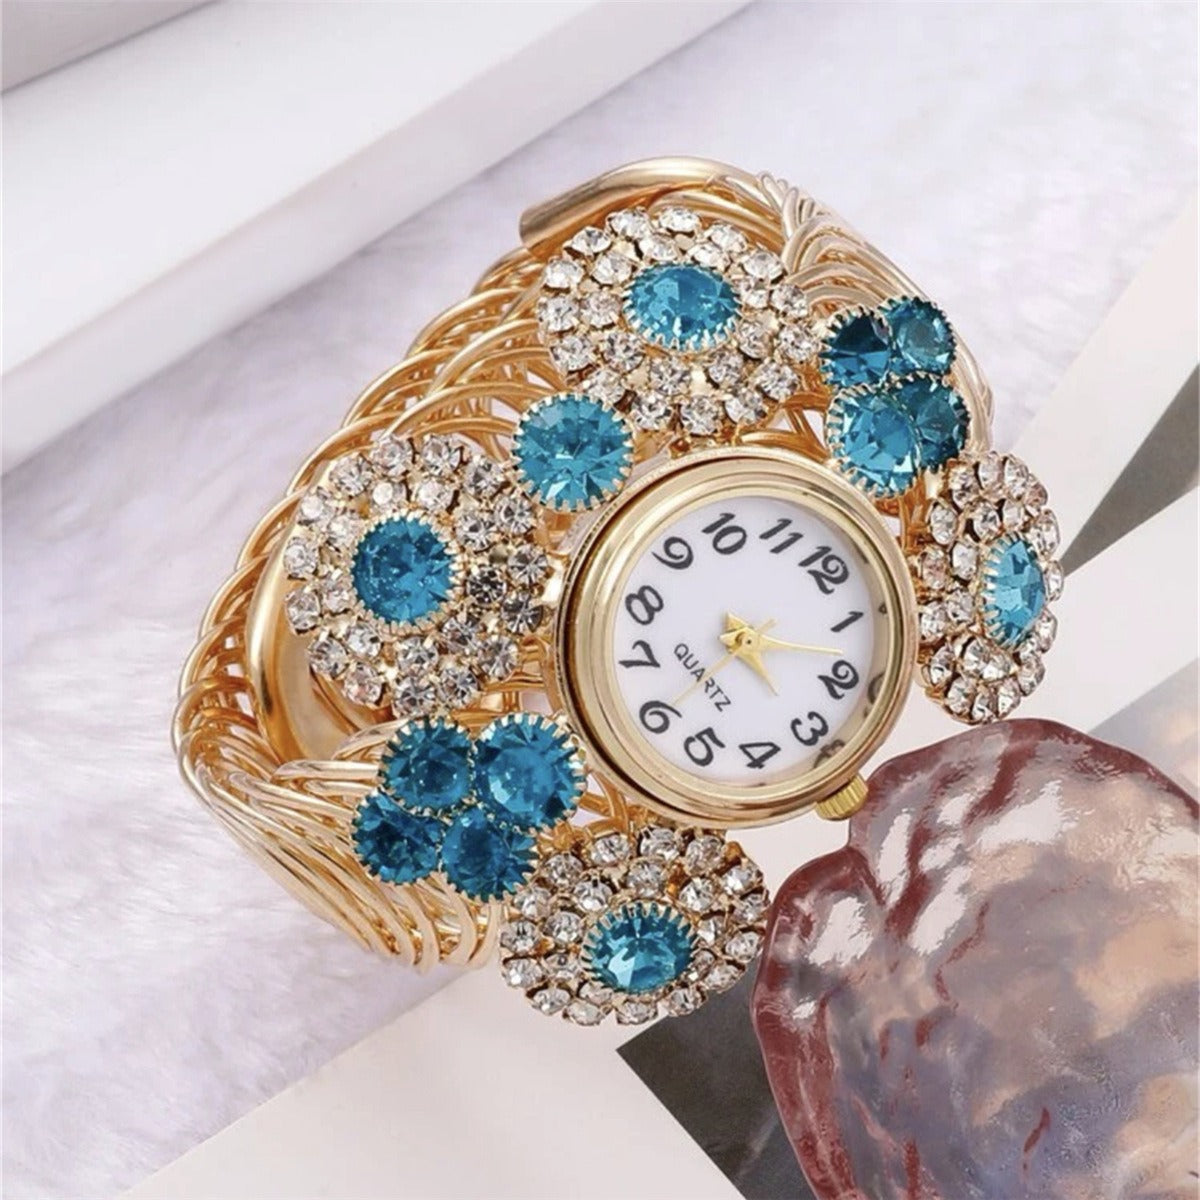 Bohemian Rhinestone Inlaid with Water Diamond and Sky Star Charm Women's Bracelet Watch Fashion Light Luxury Quartz Watch